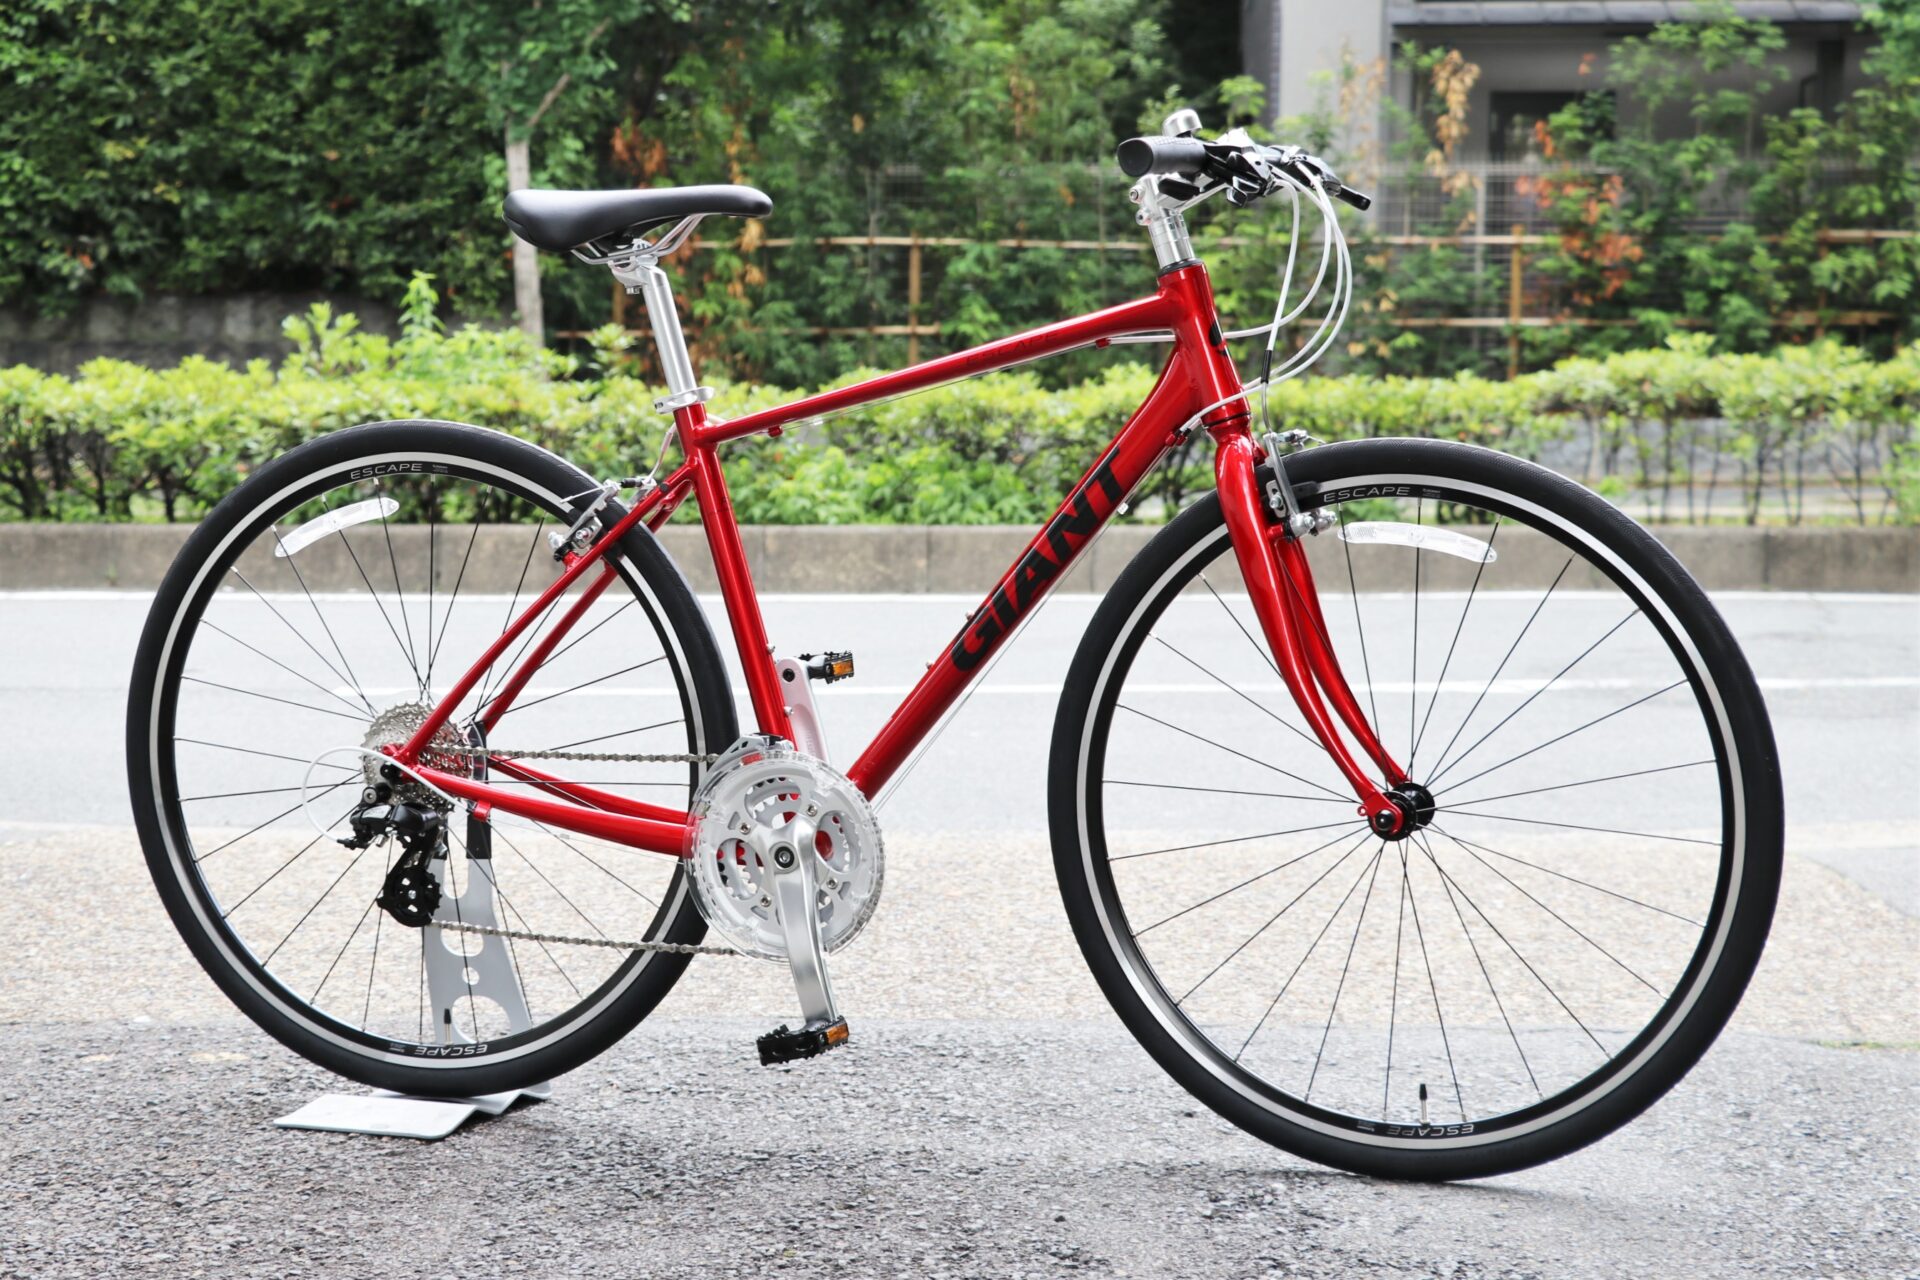 GIANT 2020年モデル】ESCAPE R3（エスケープ アールスリー） モデルチェンジした人気クロスバイクがついに入荷！  京都の中古自転車・新車販売 サイクルショップ エイリン